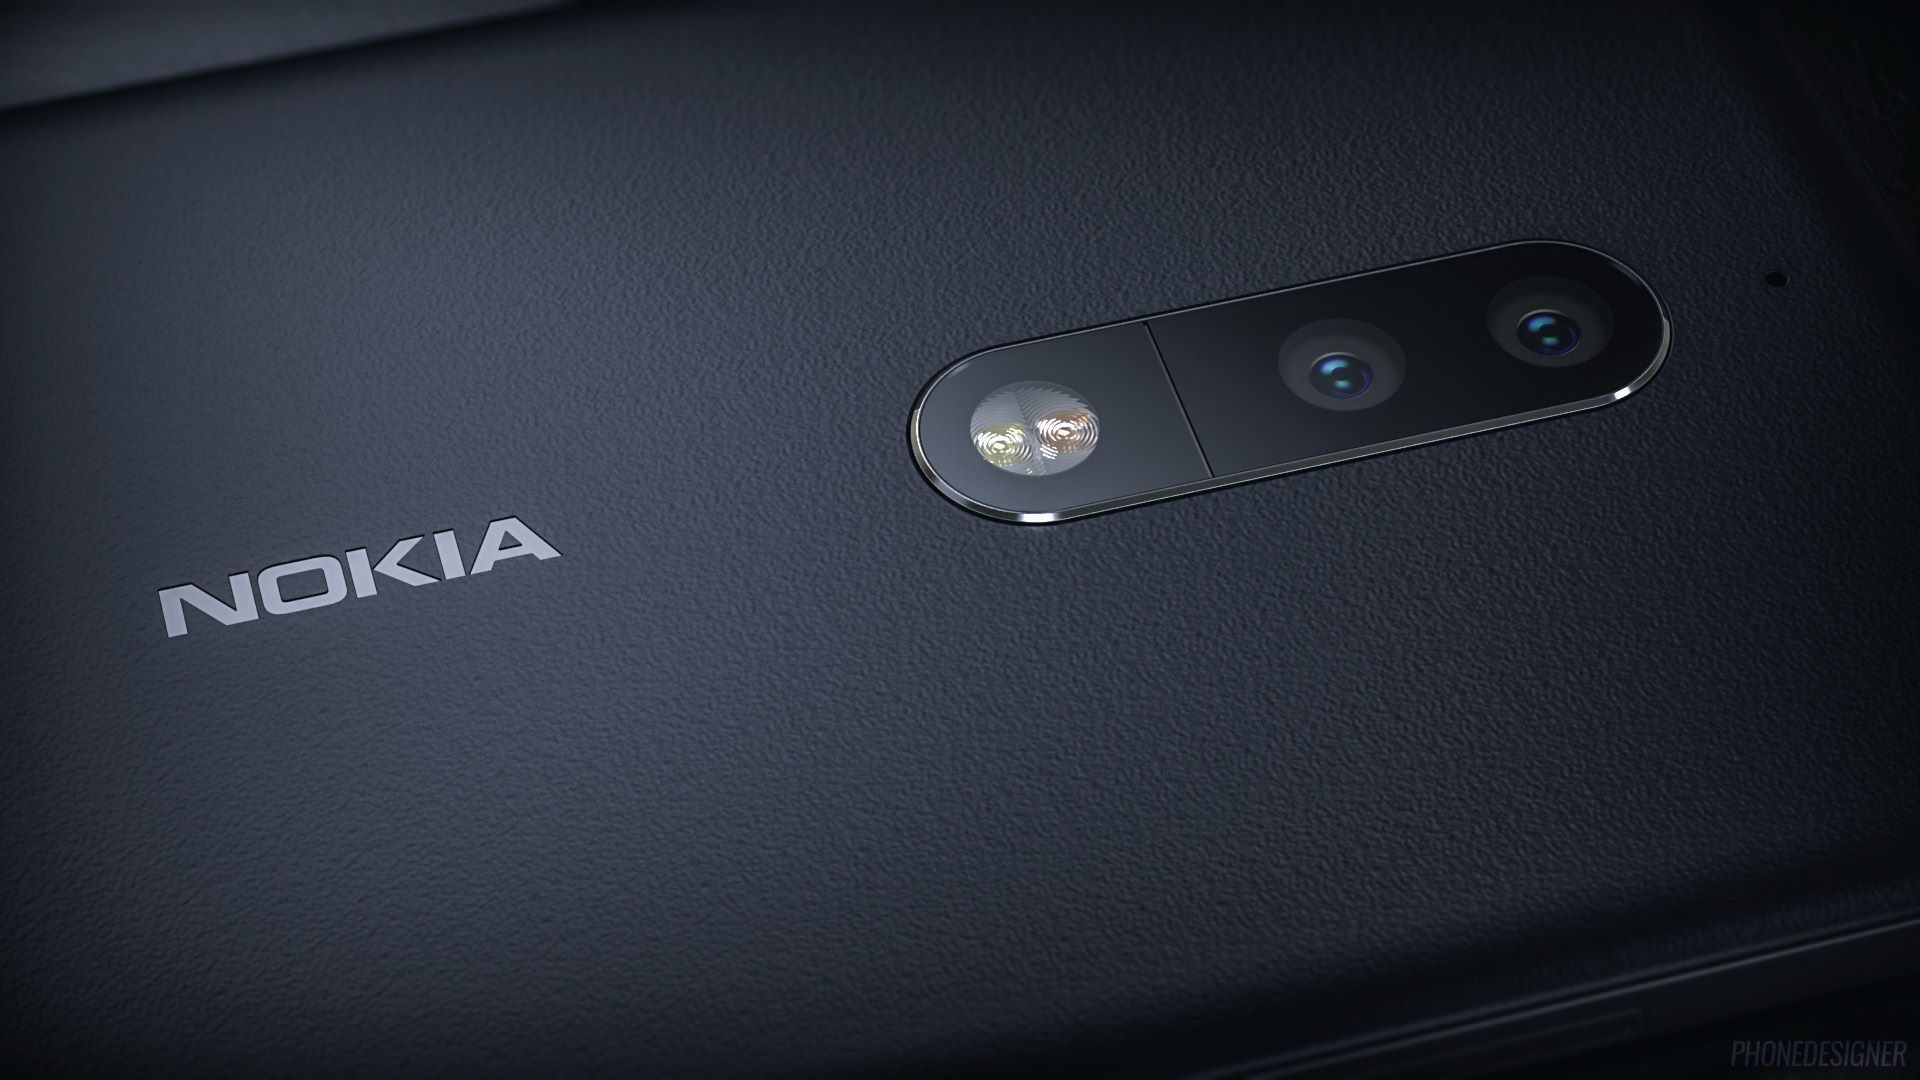 HMD ยืนยันจะมีสมาร์ทโฟนเปิดตัวอีกหลายรุ่นในปีนี้ แต่หนึ่งในนั้นจะไม่มี Nokia 4 อย่างแน่นอน